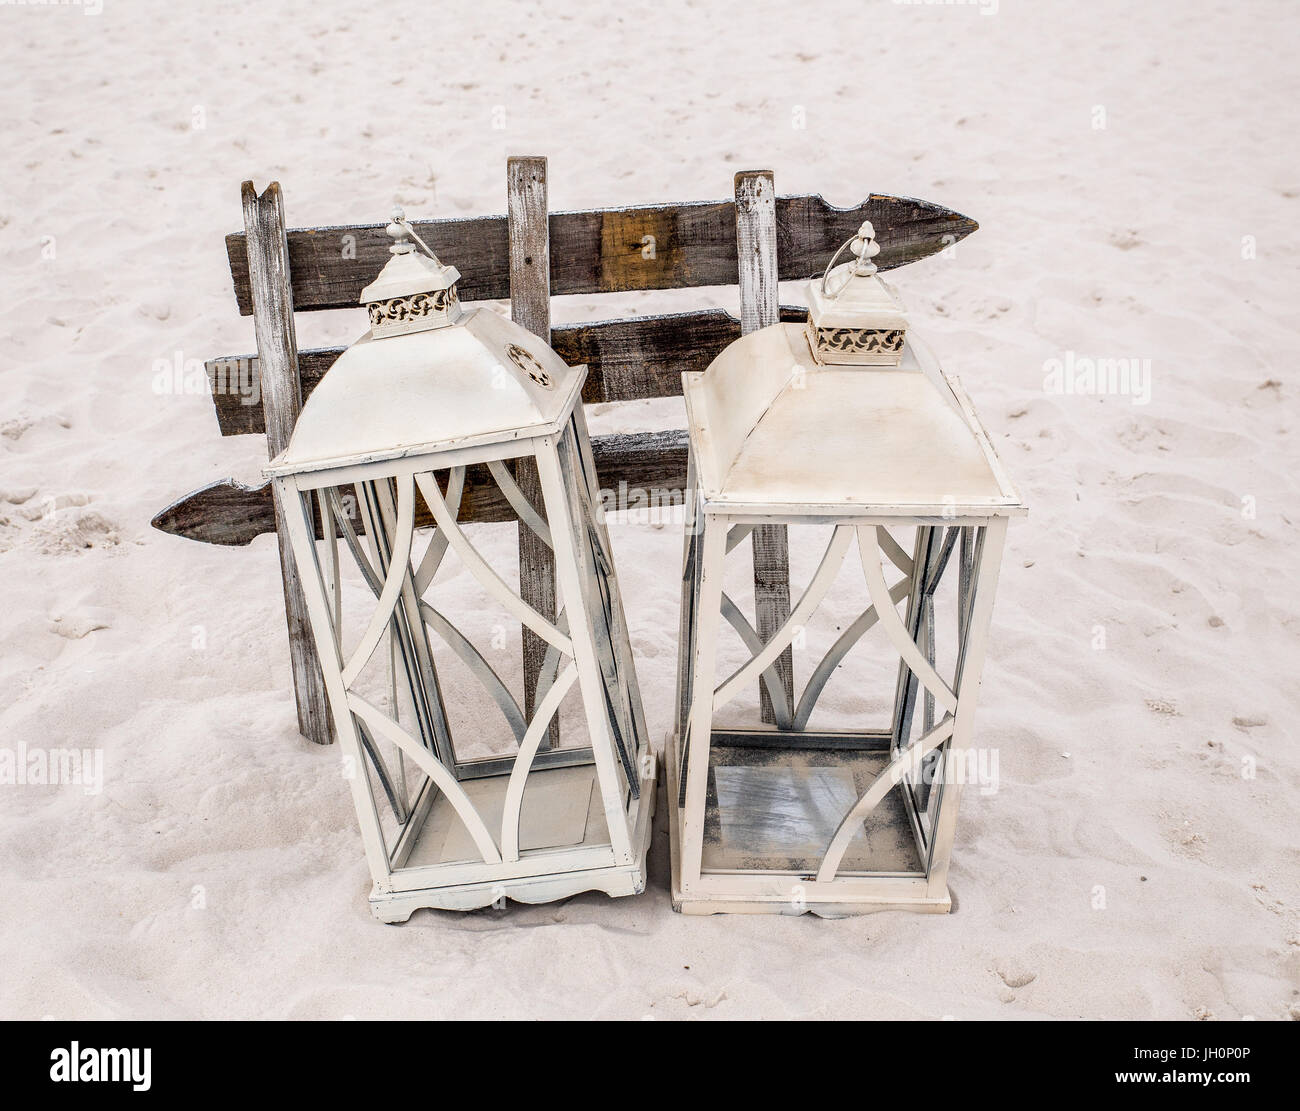 Cette photo montre métal blanc rustique ouverte à pans de maisons lanterne associés en face de sélection des flèches sur la plage. Banque D'Images